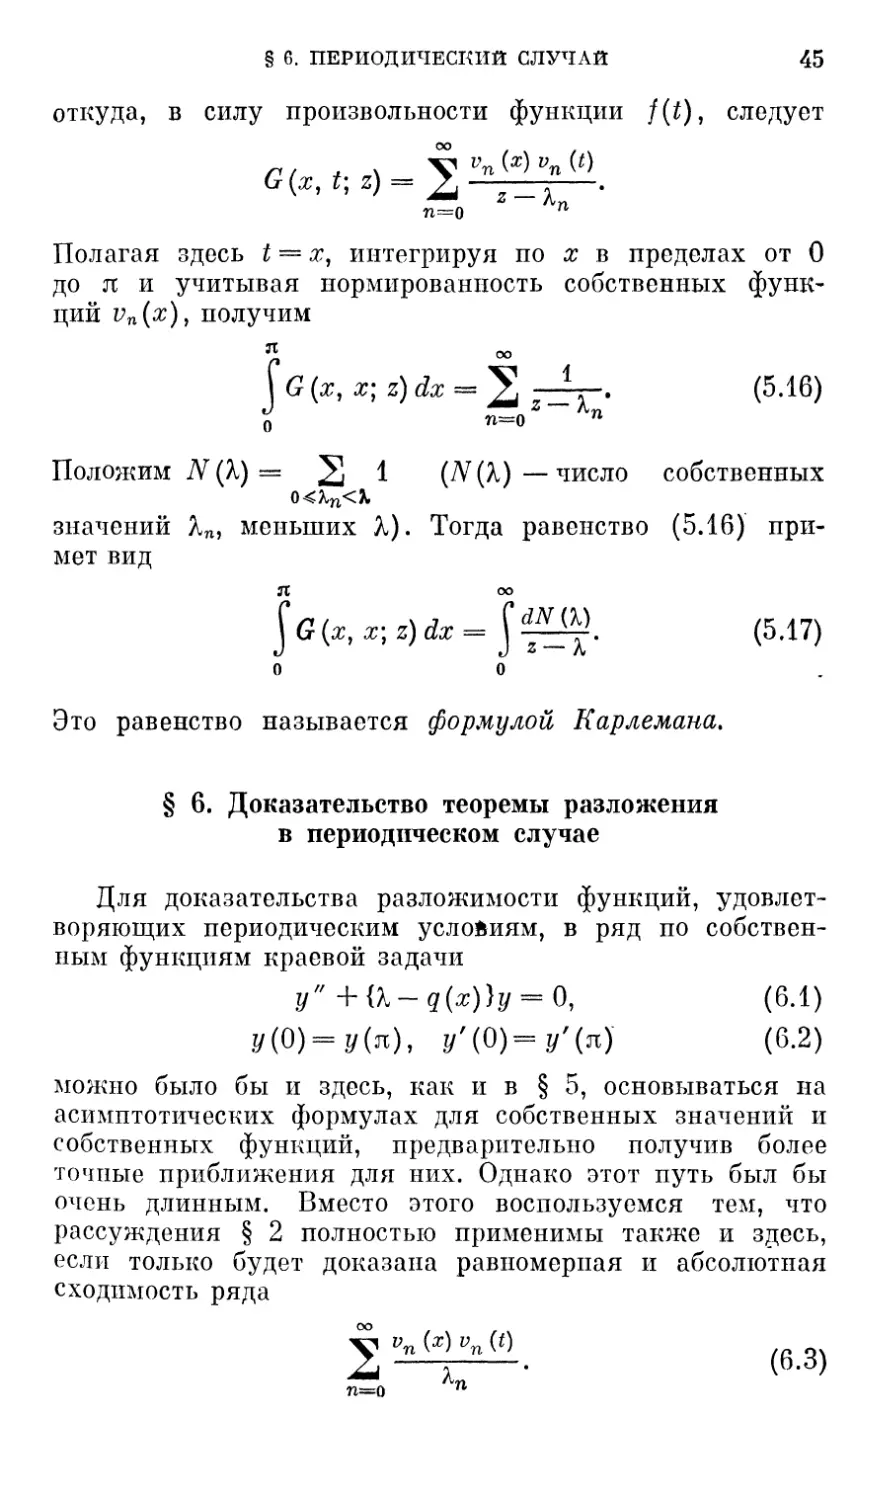 § 6. Доказательство теоремы разложения в периодическом случае